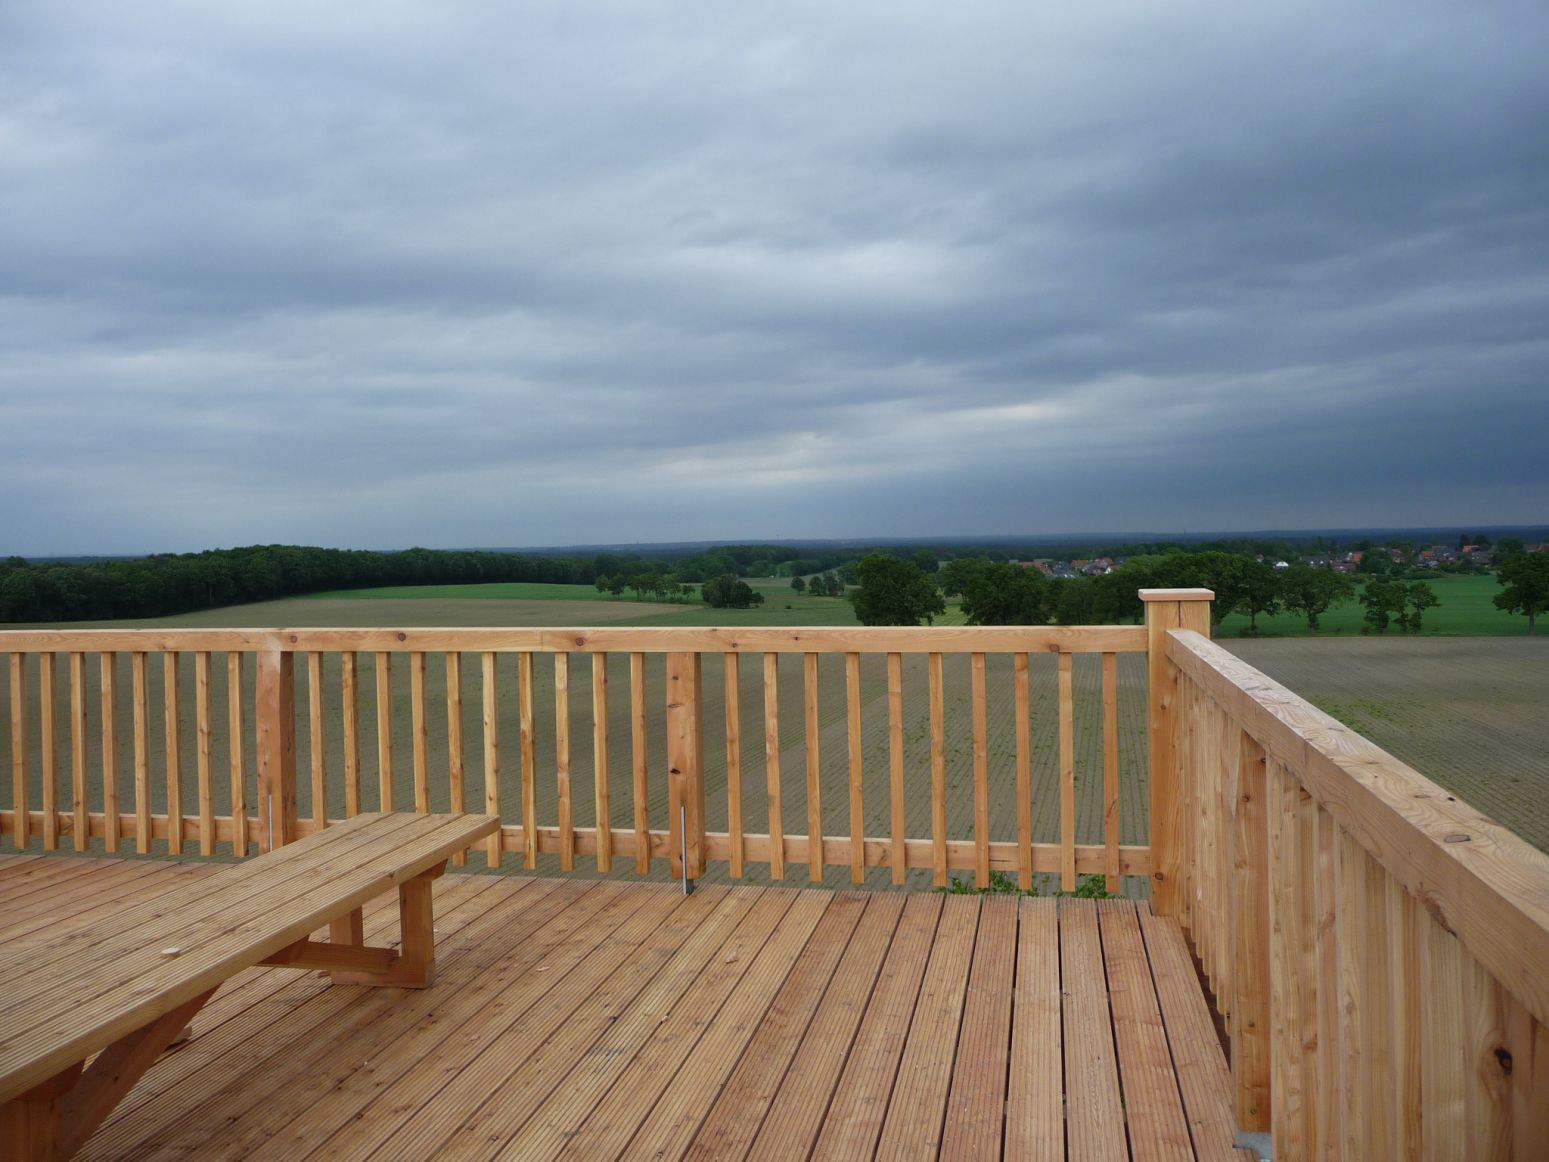 Neubau eine Aussichtsturms aus Holz im Naturpark Winsen